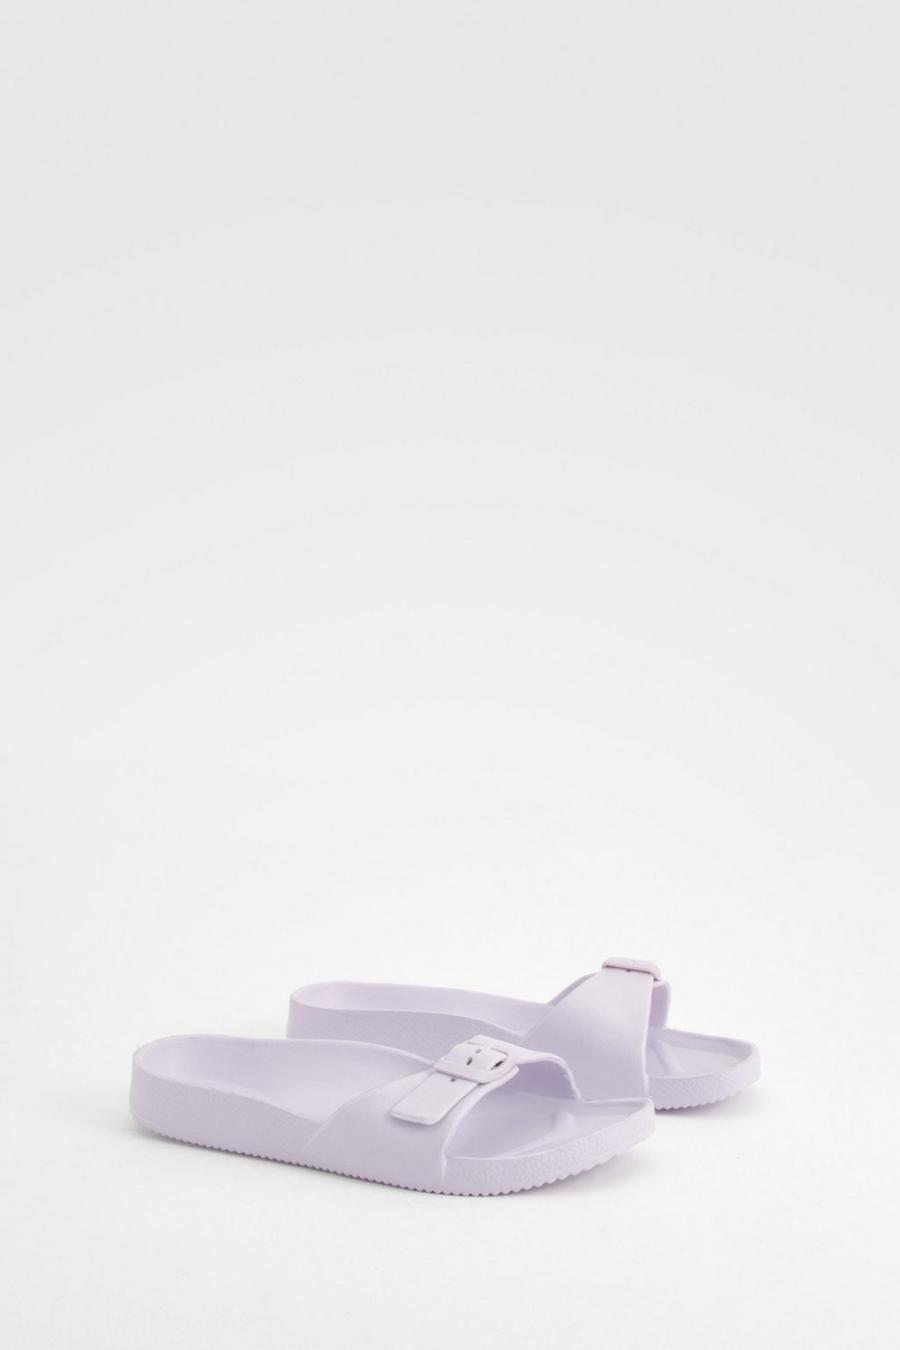 Sandalias gruesas con tira, Lilac image number 1